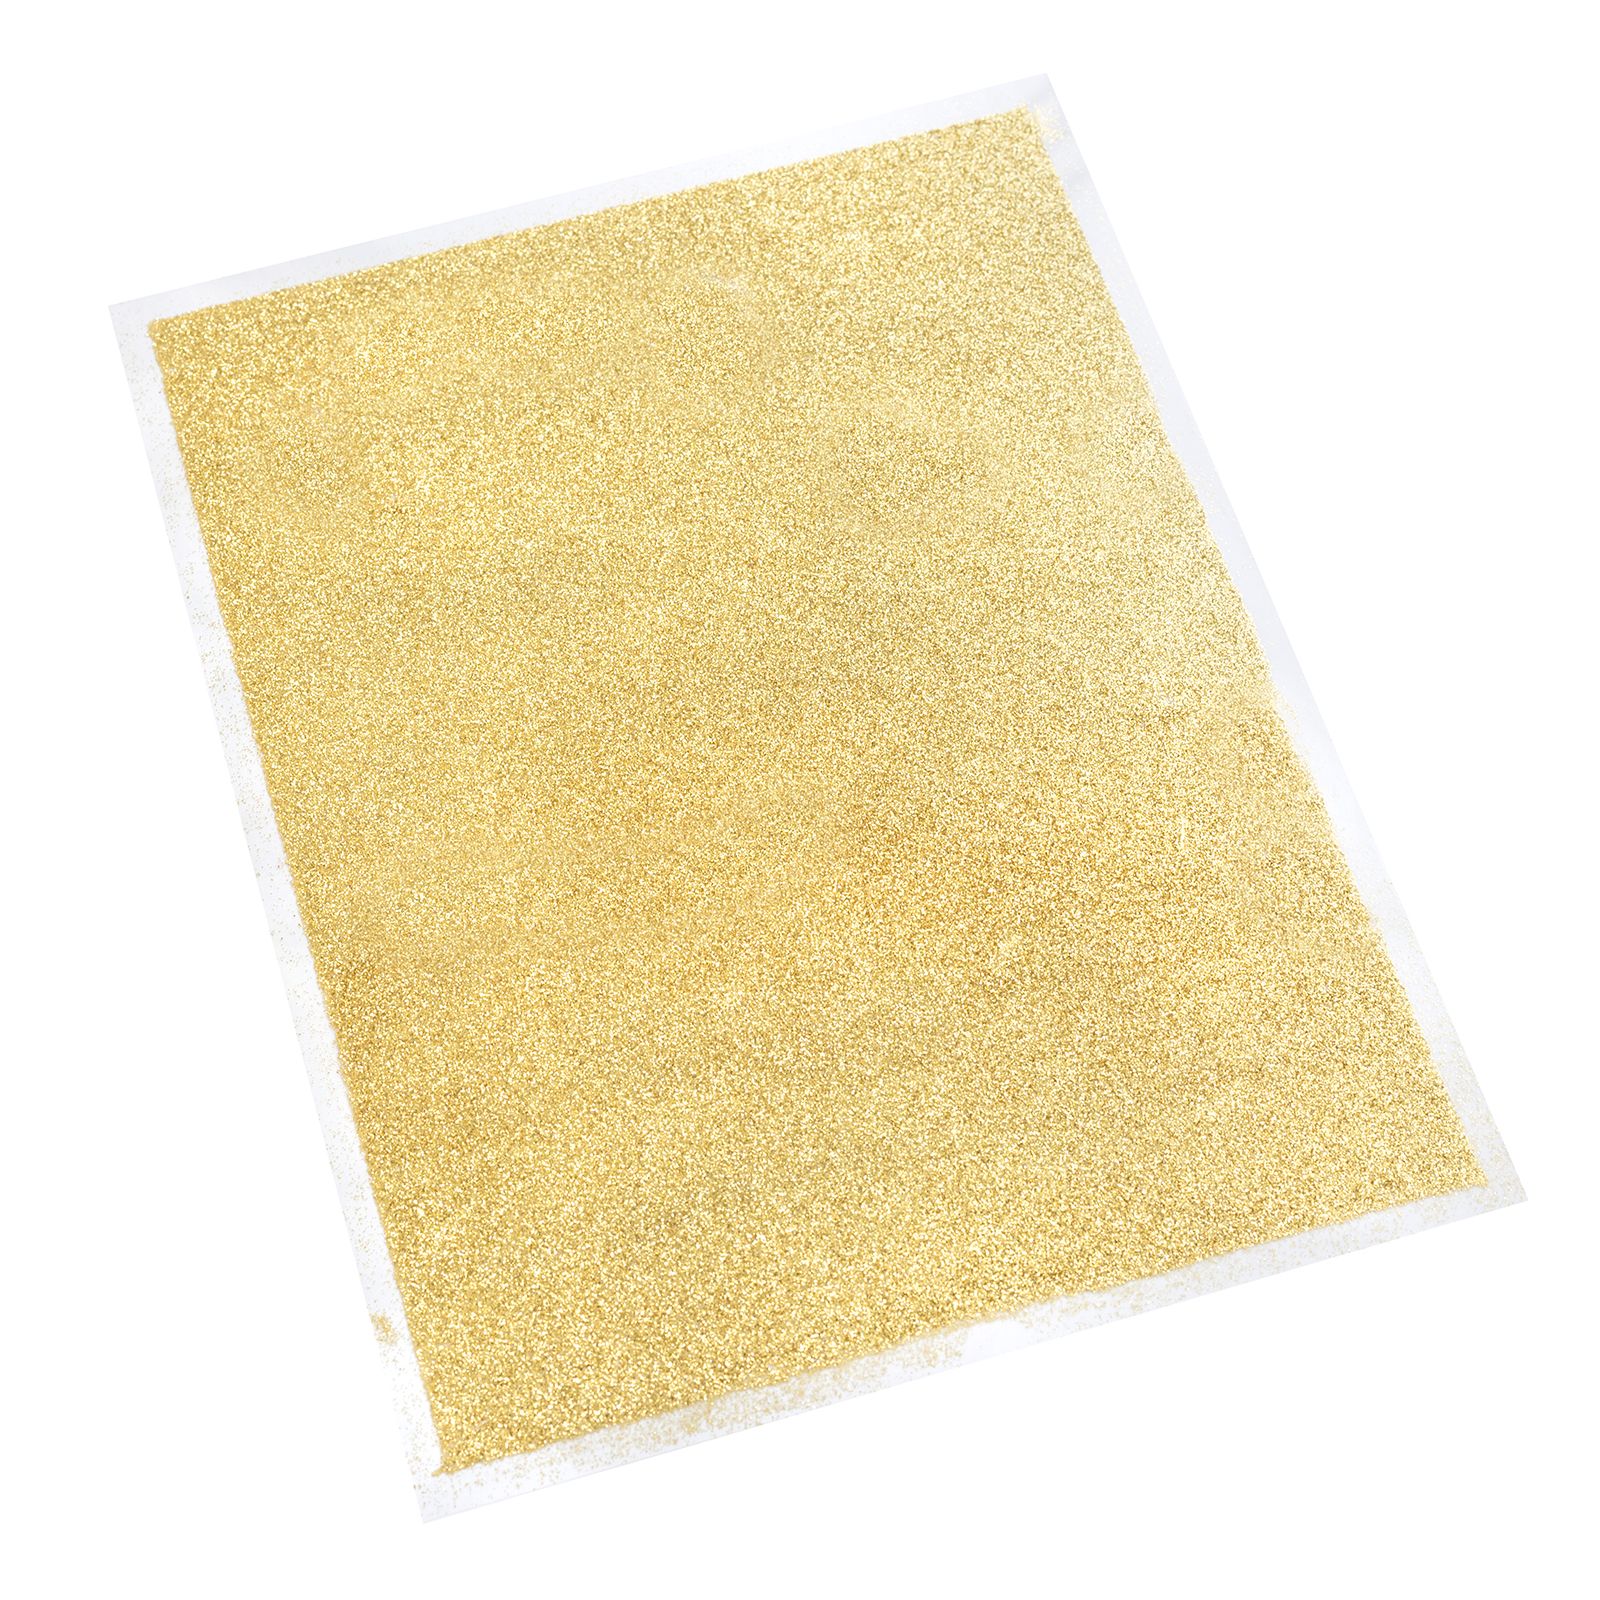 Heidi Swapp • Minc glitter sheets minc 6x8" Gold